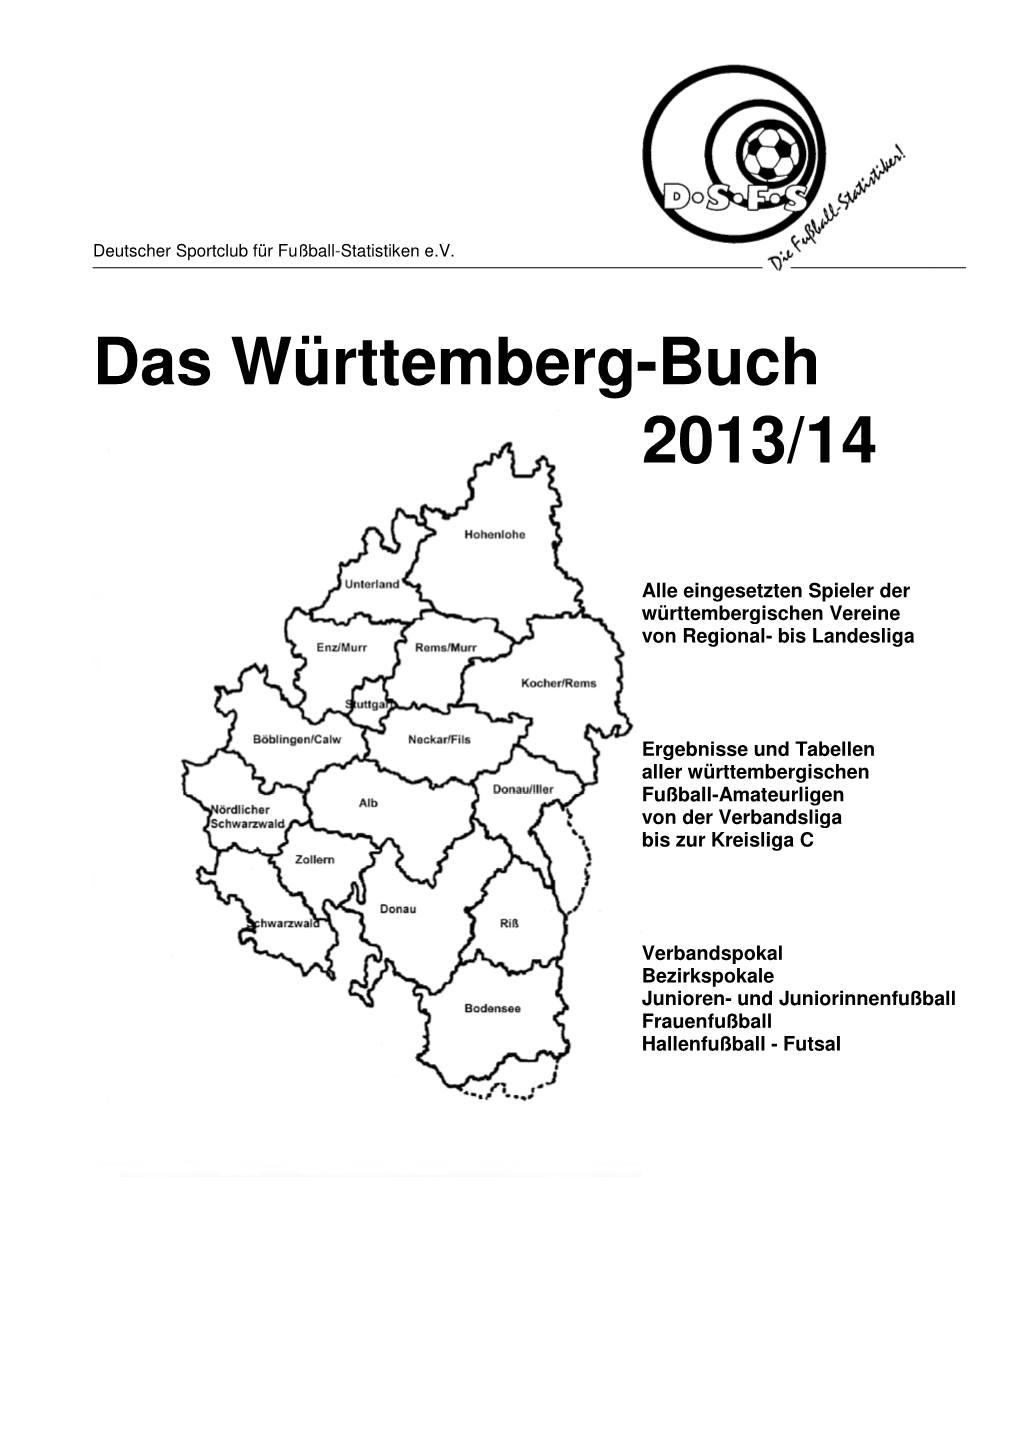 Das Württemberg-Buch 2013/14